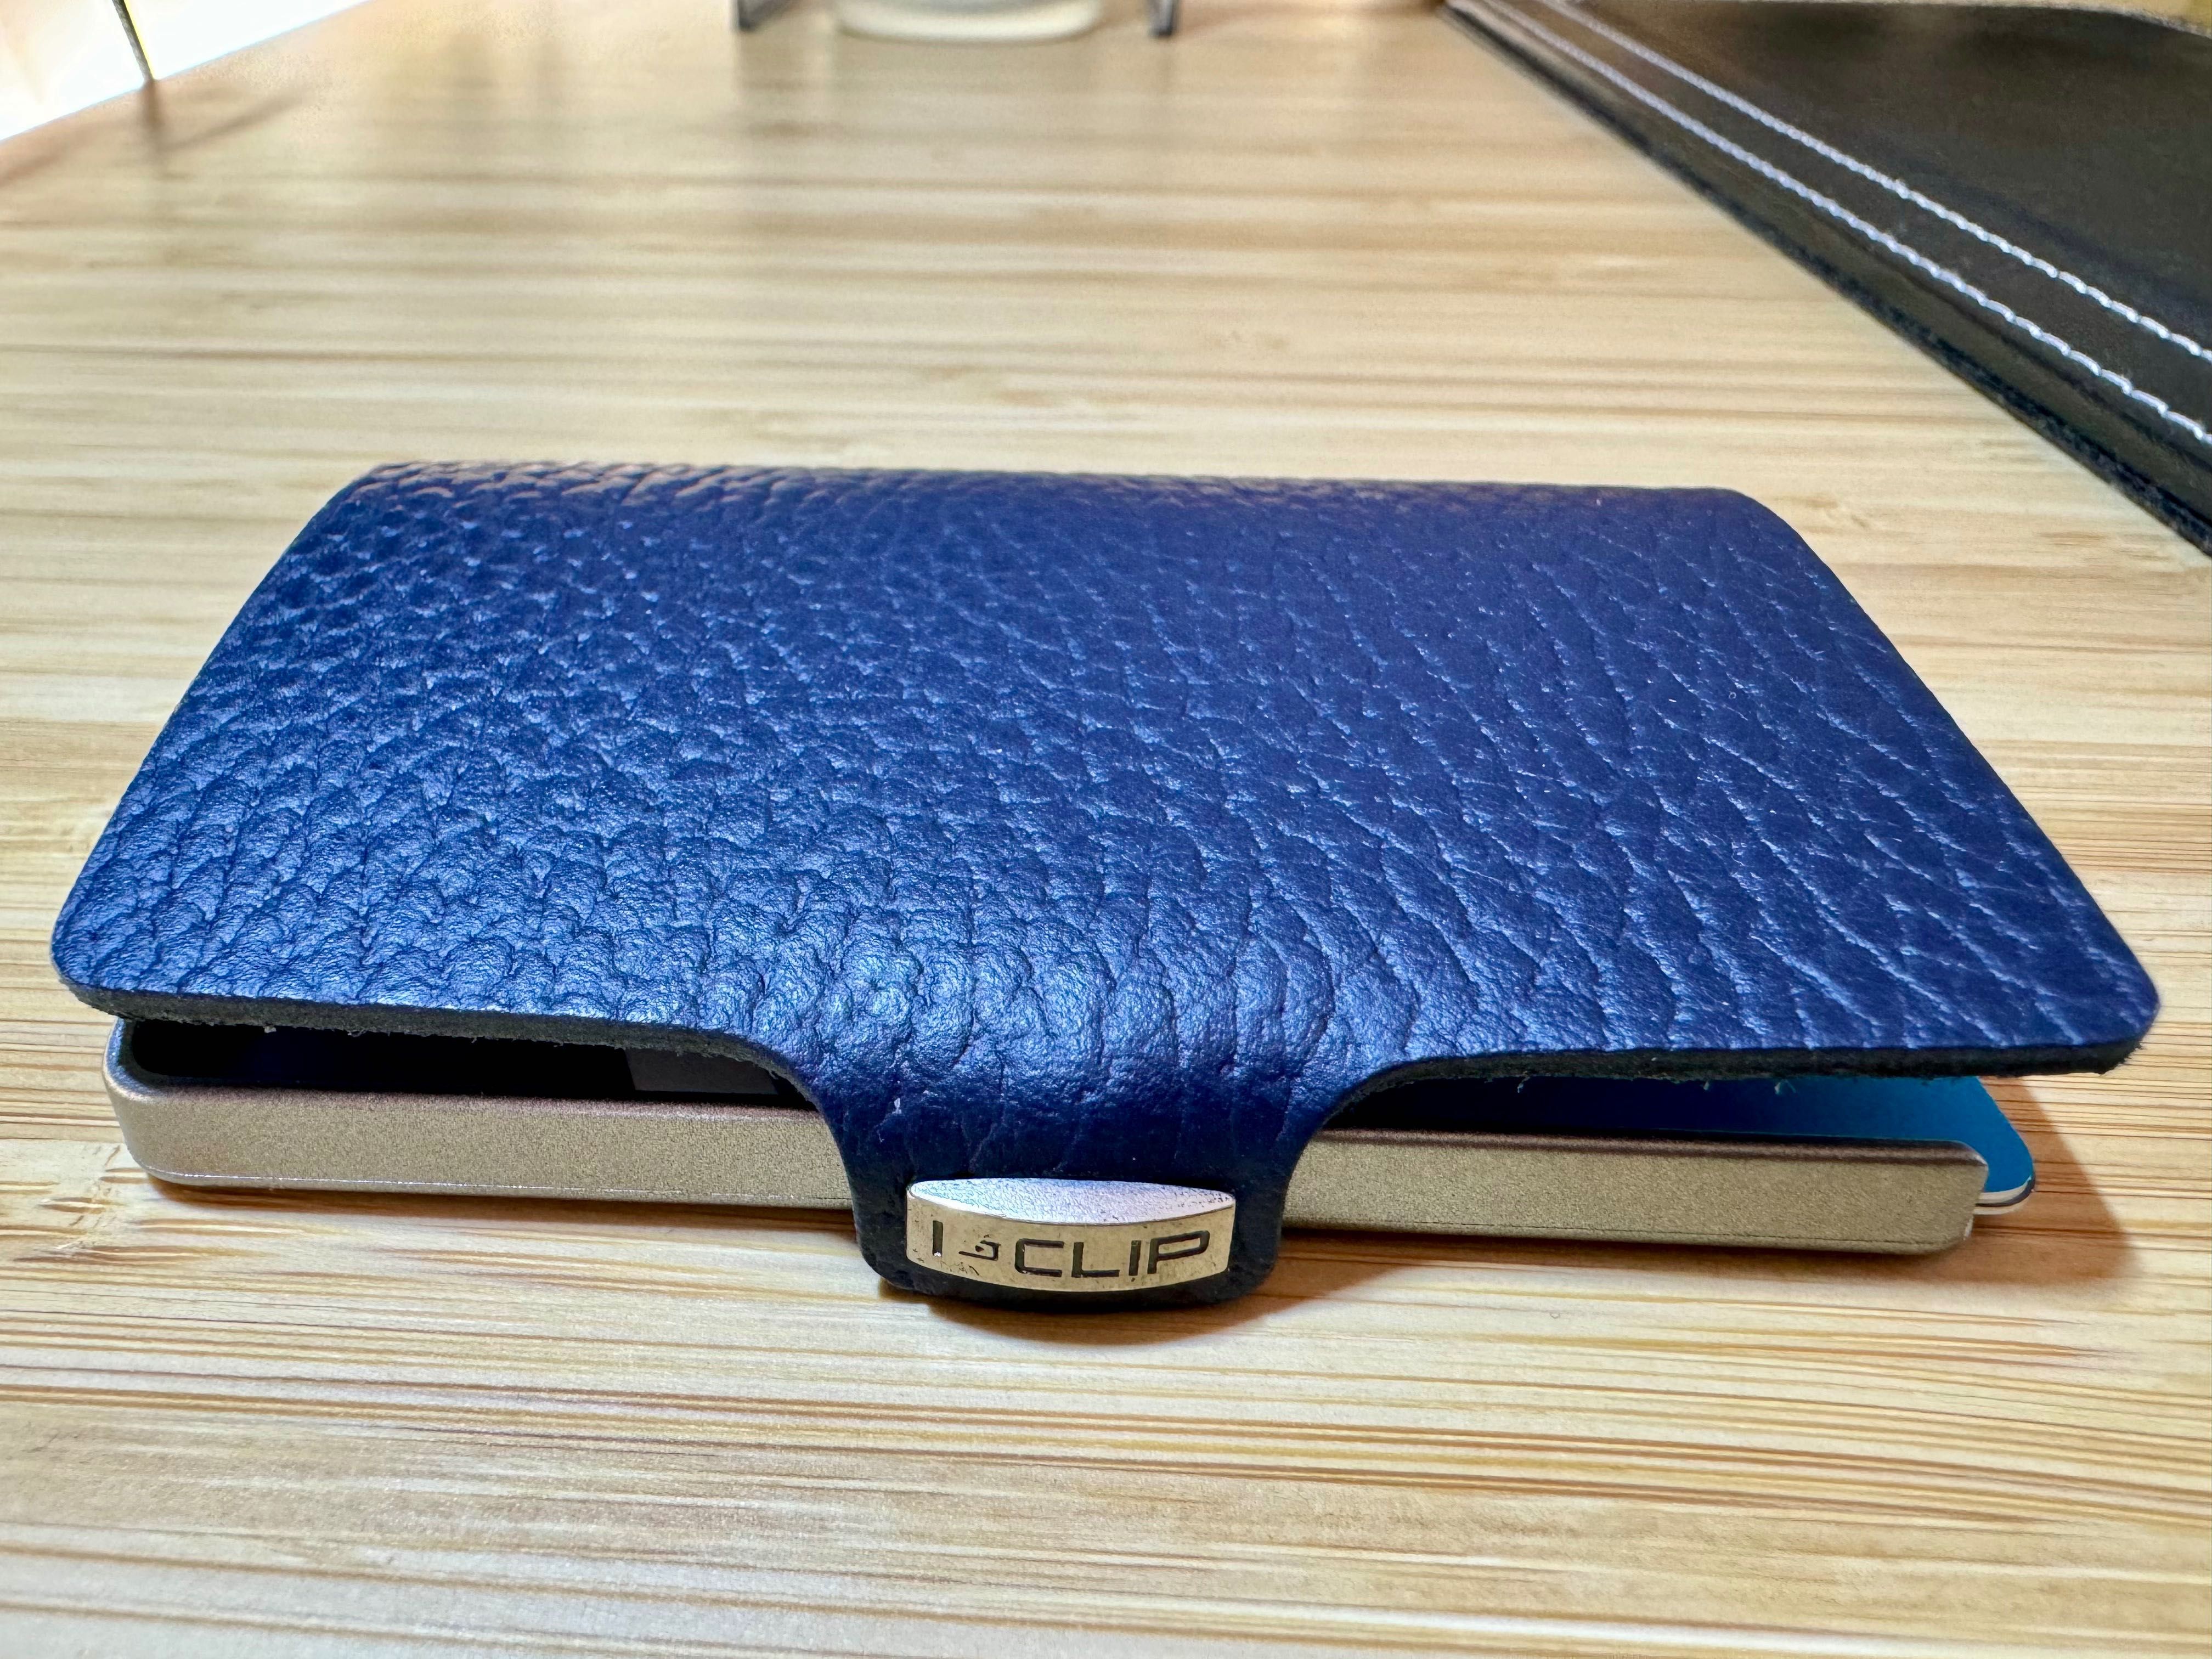 I-CLIP wallet - висококачествен минималистичен портфейл